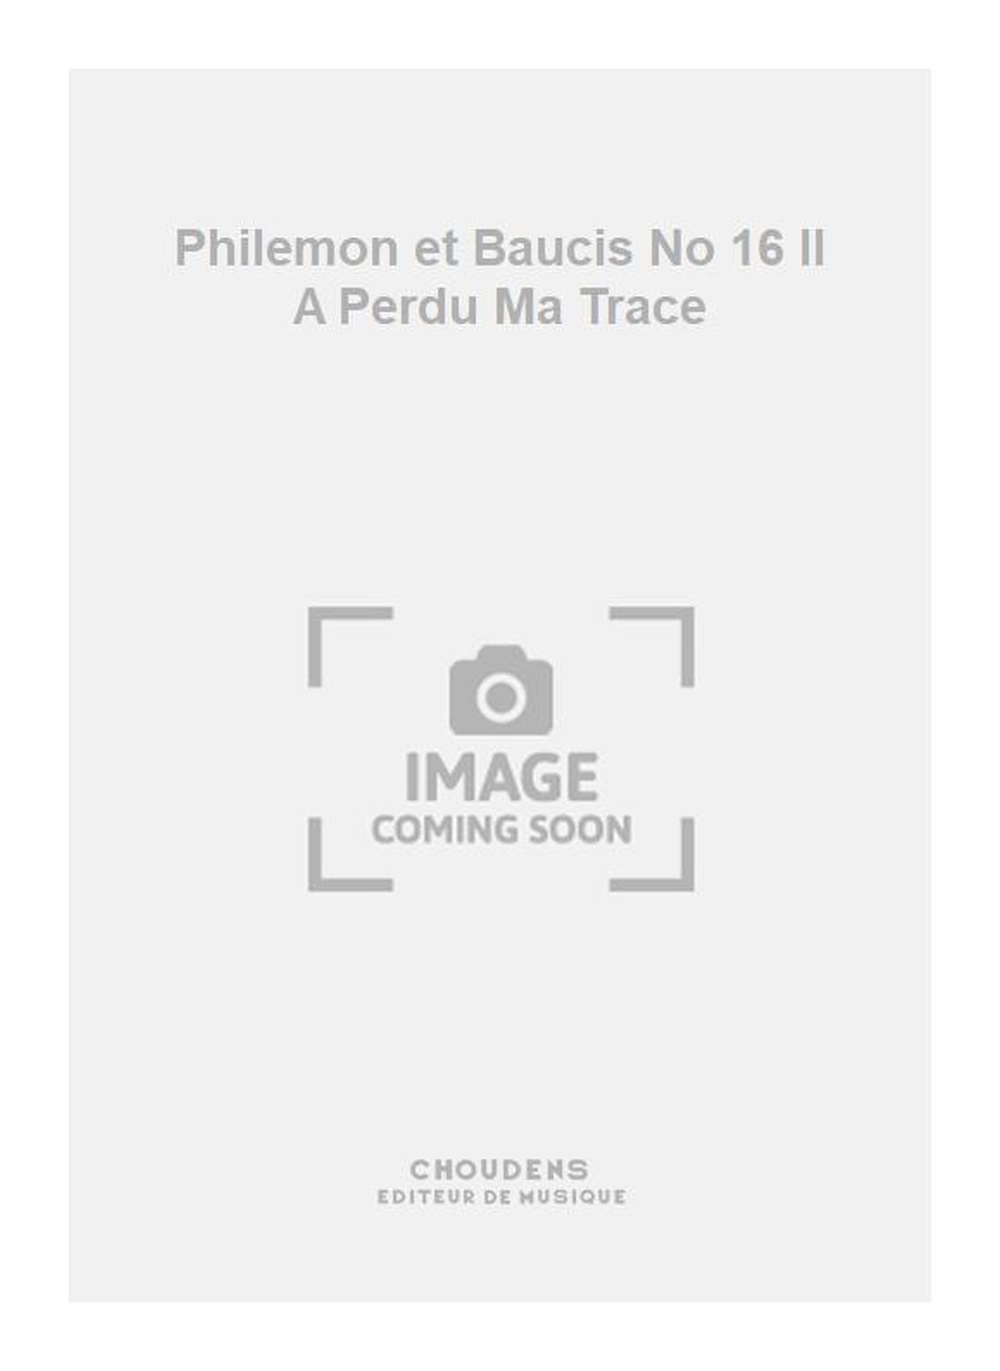 Charles Gounod: Philemon et Baucis No 16 Il A Perdu Ma Trace